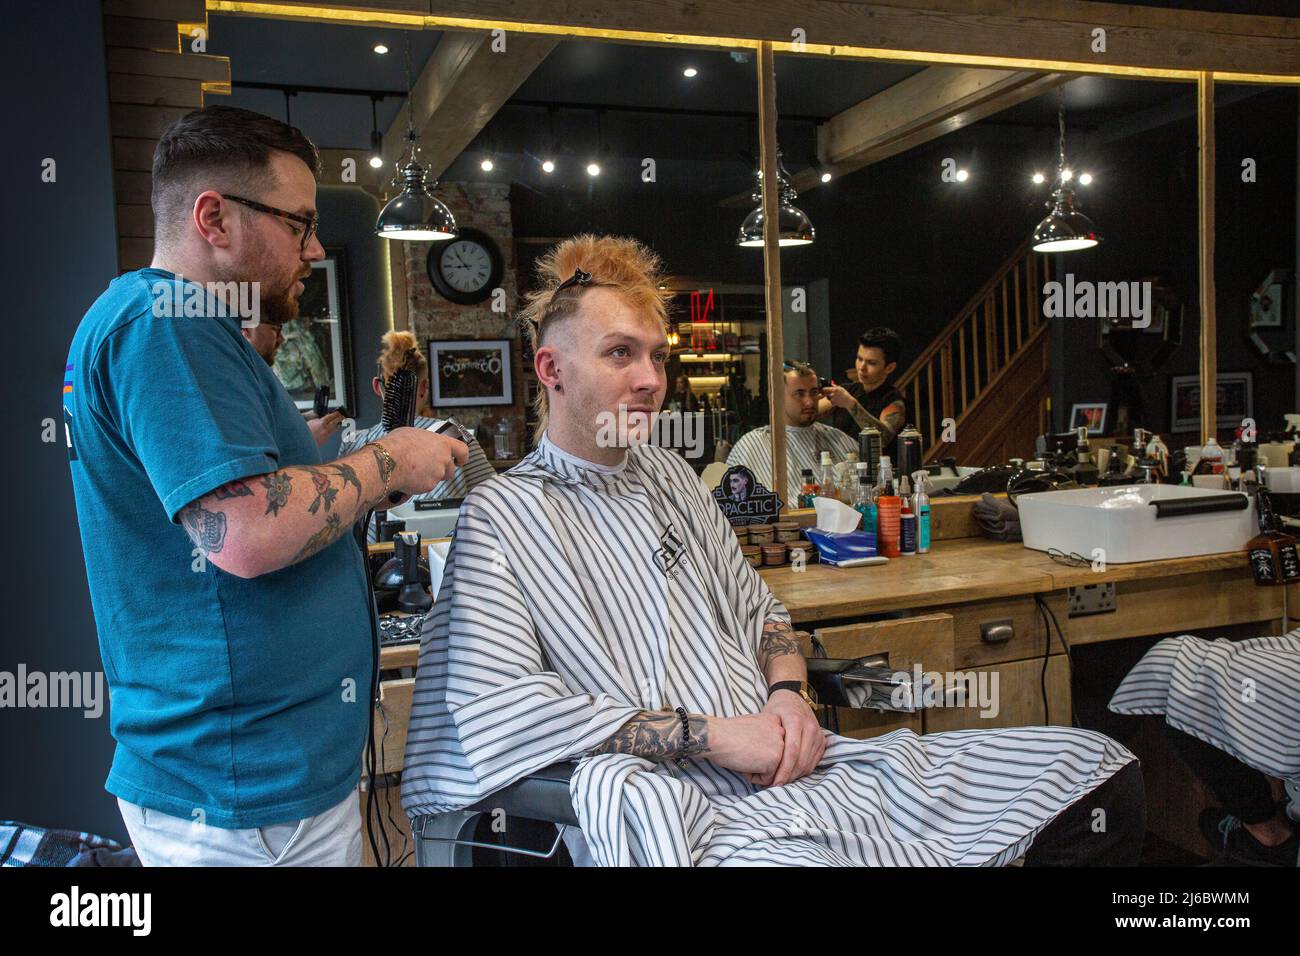 Friseur schneidet Haare in einem Friseurladen Wakefield, West Yorkshire, England. Stockfoto